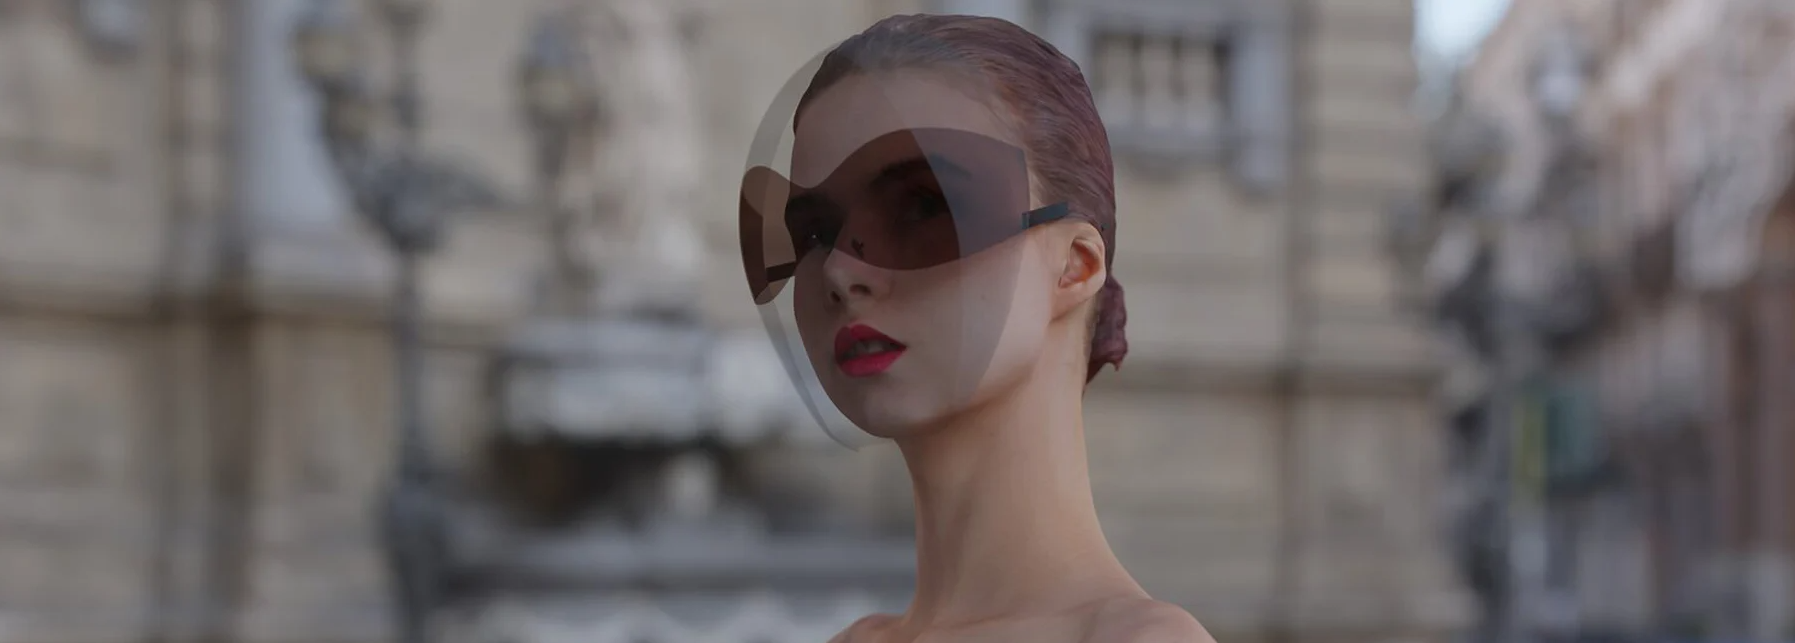 Designer cria protetor facial com óculos de sol integrado